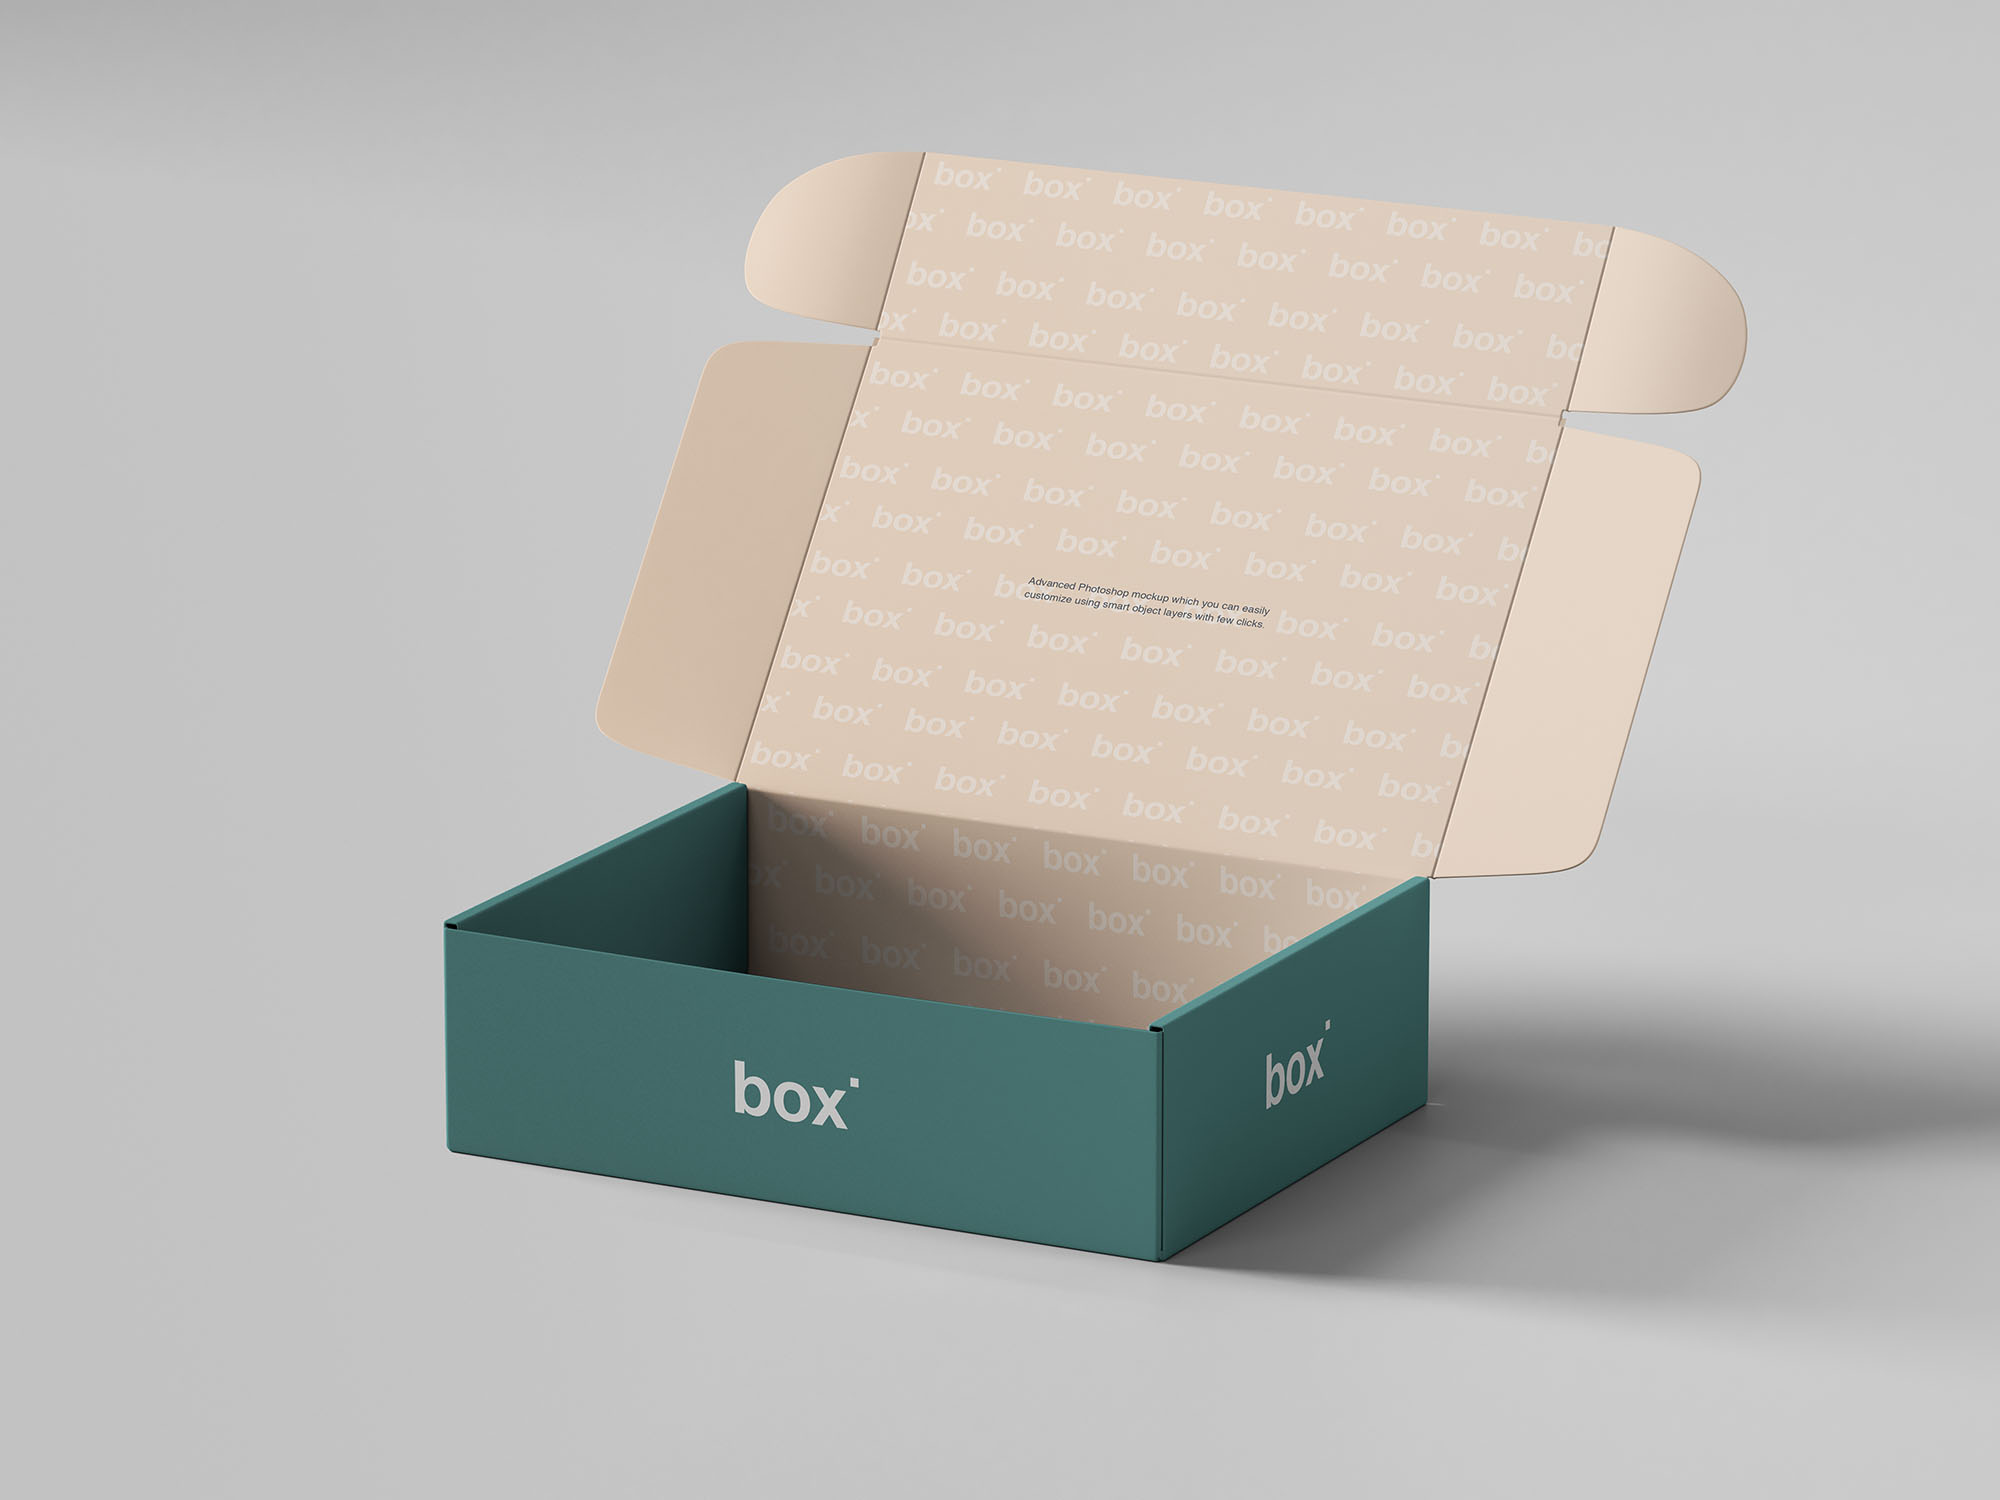 鞋盒包装设计展示素材中国精选模板素材 Pinch Lock Box Mockup插图